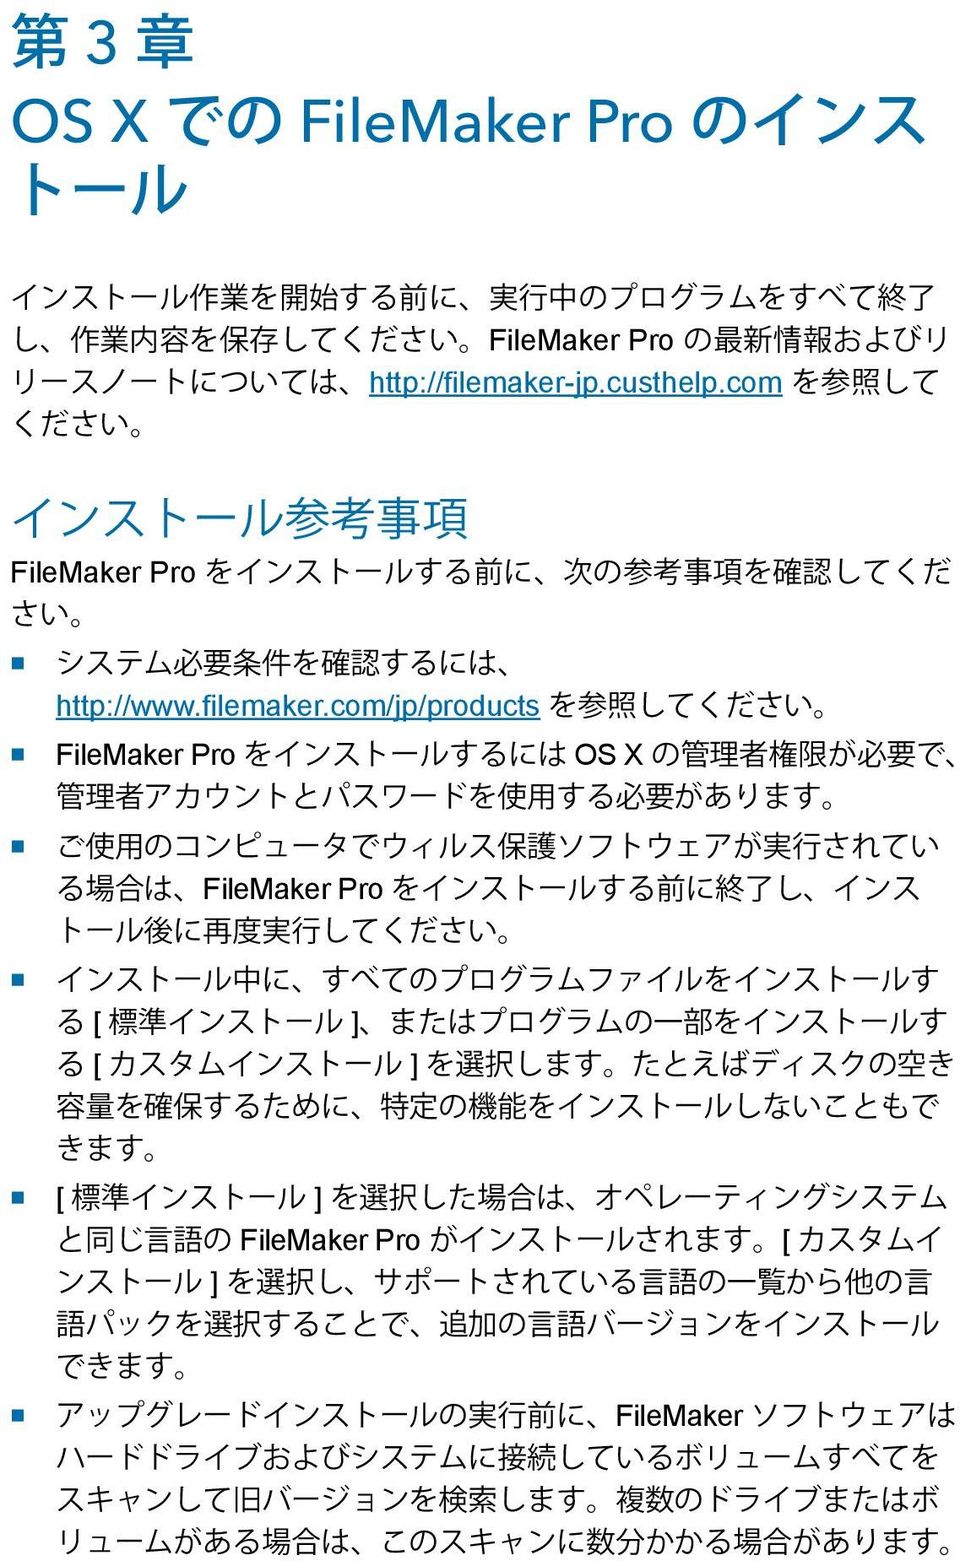 com FileMaker Pro 1 http://www.filemaker.